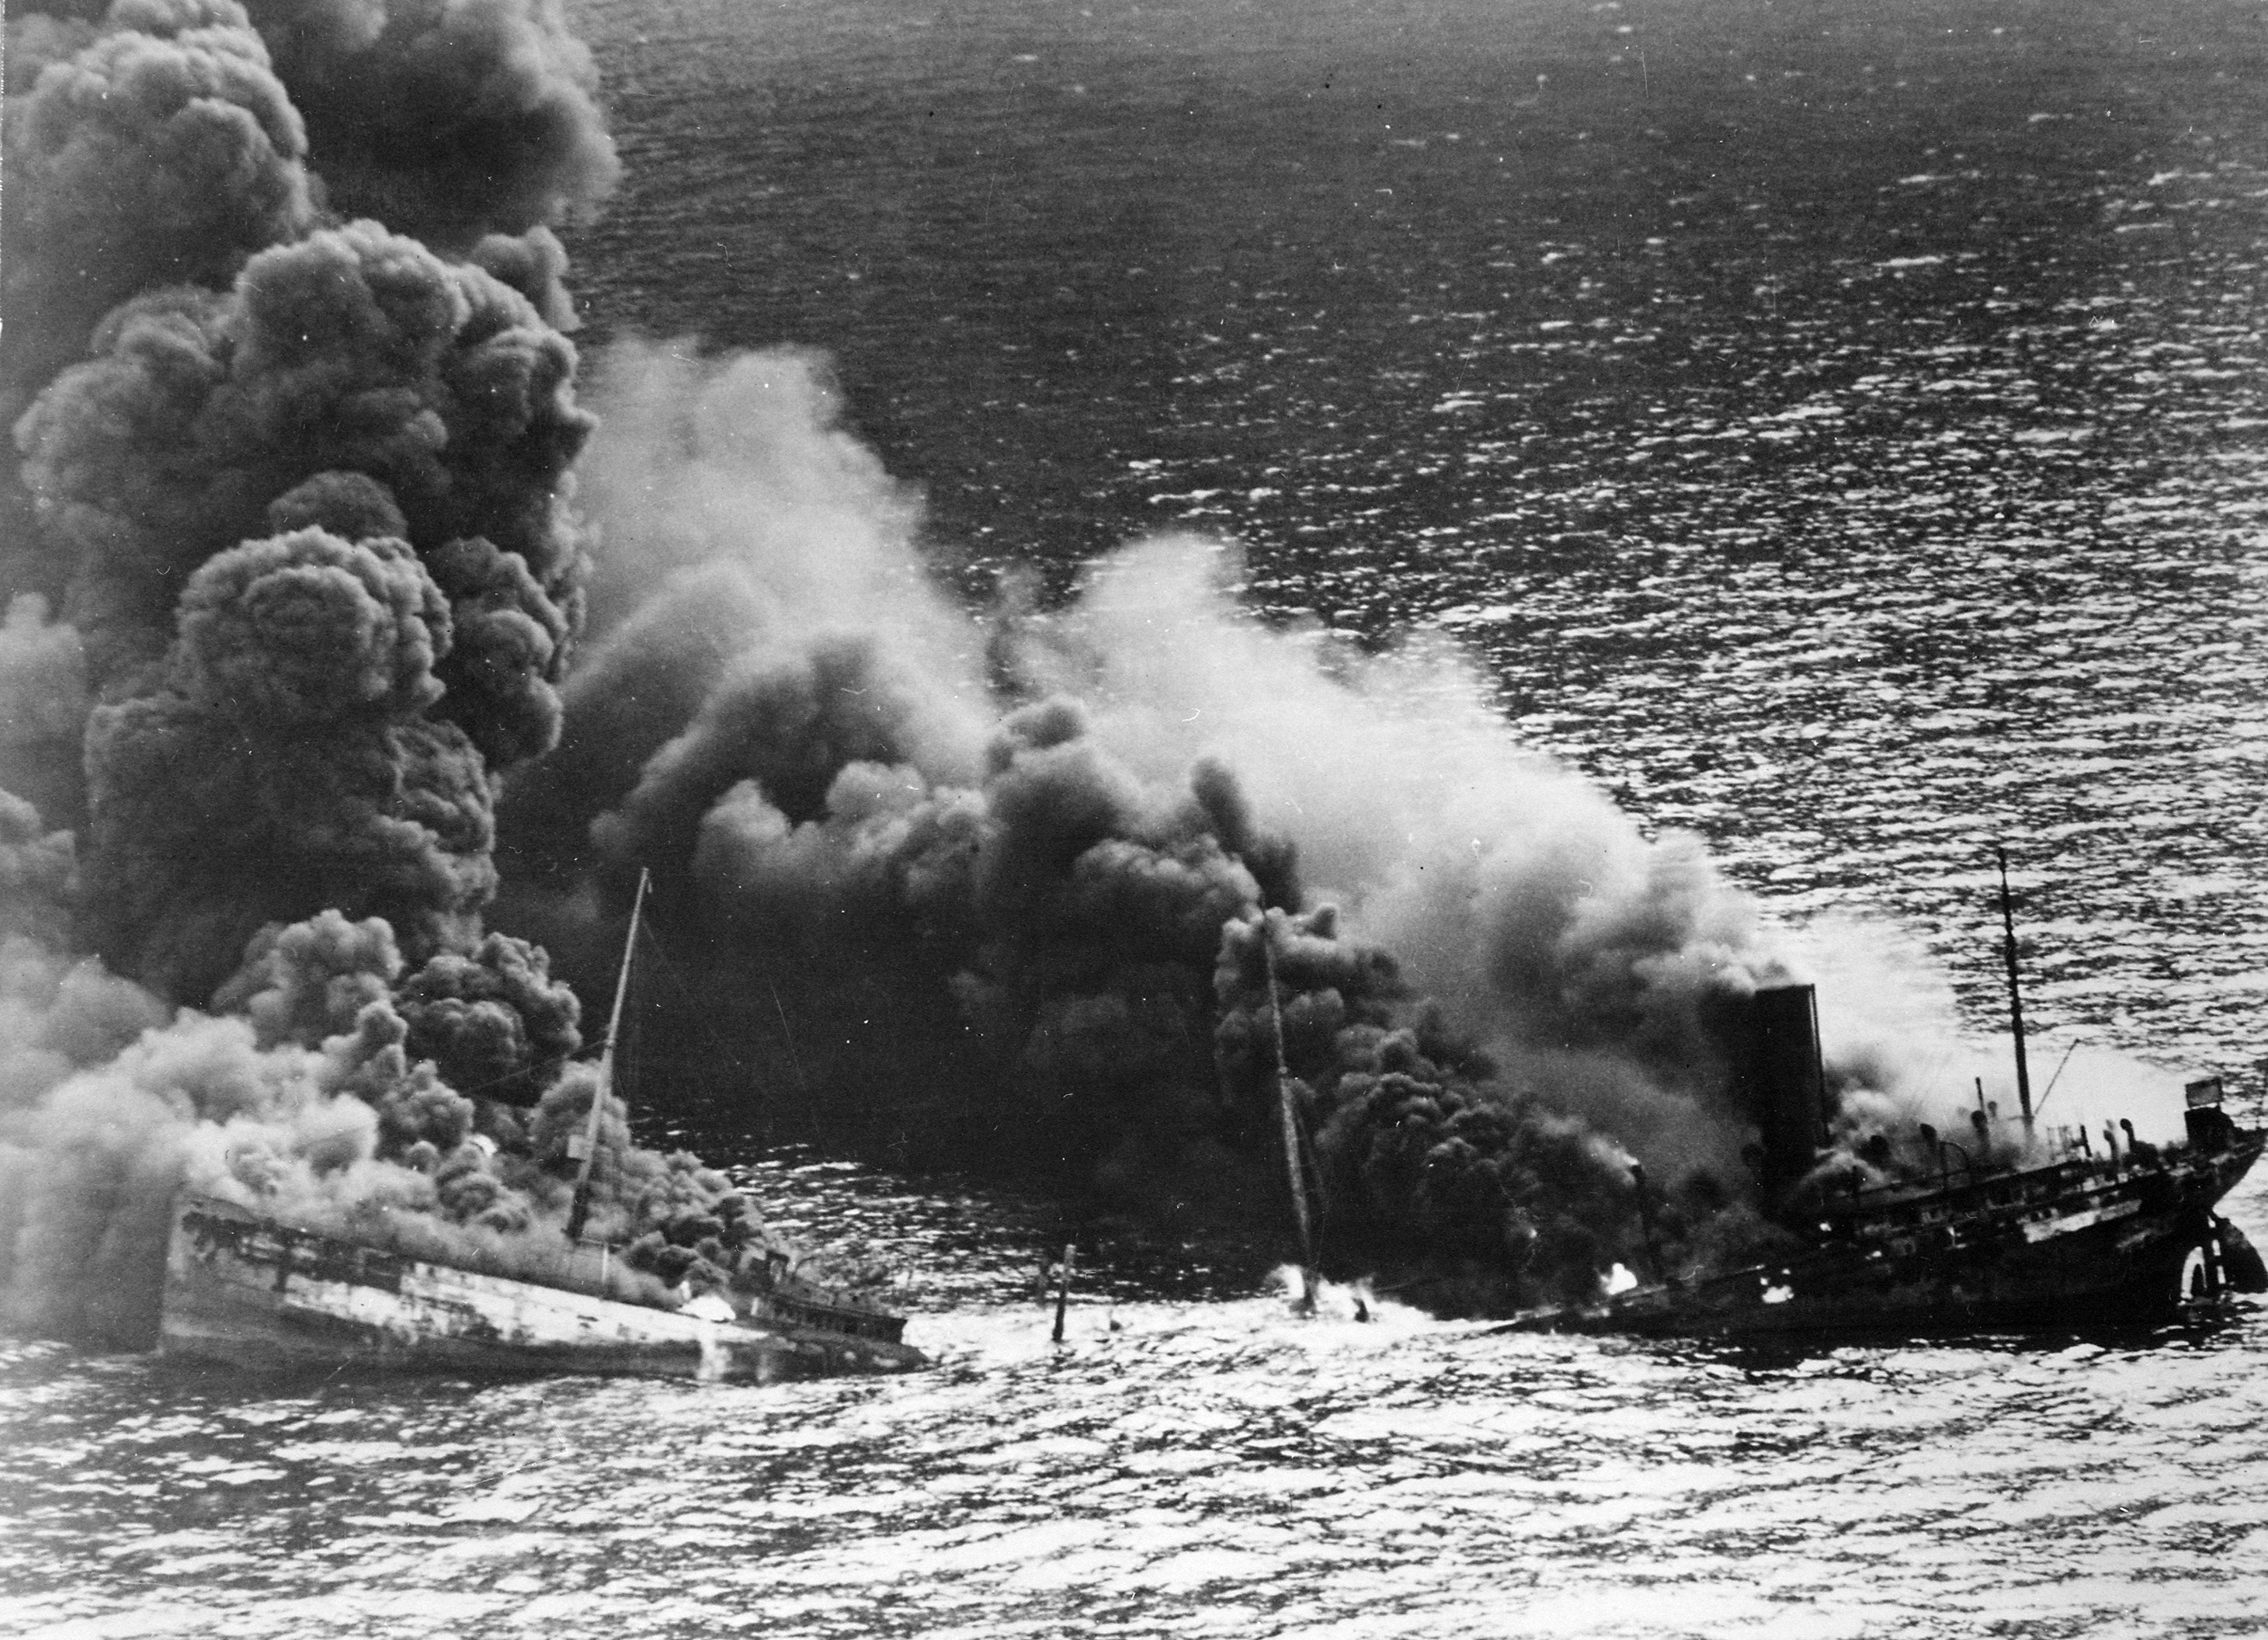 Allied tanker torpedoed off US waters